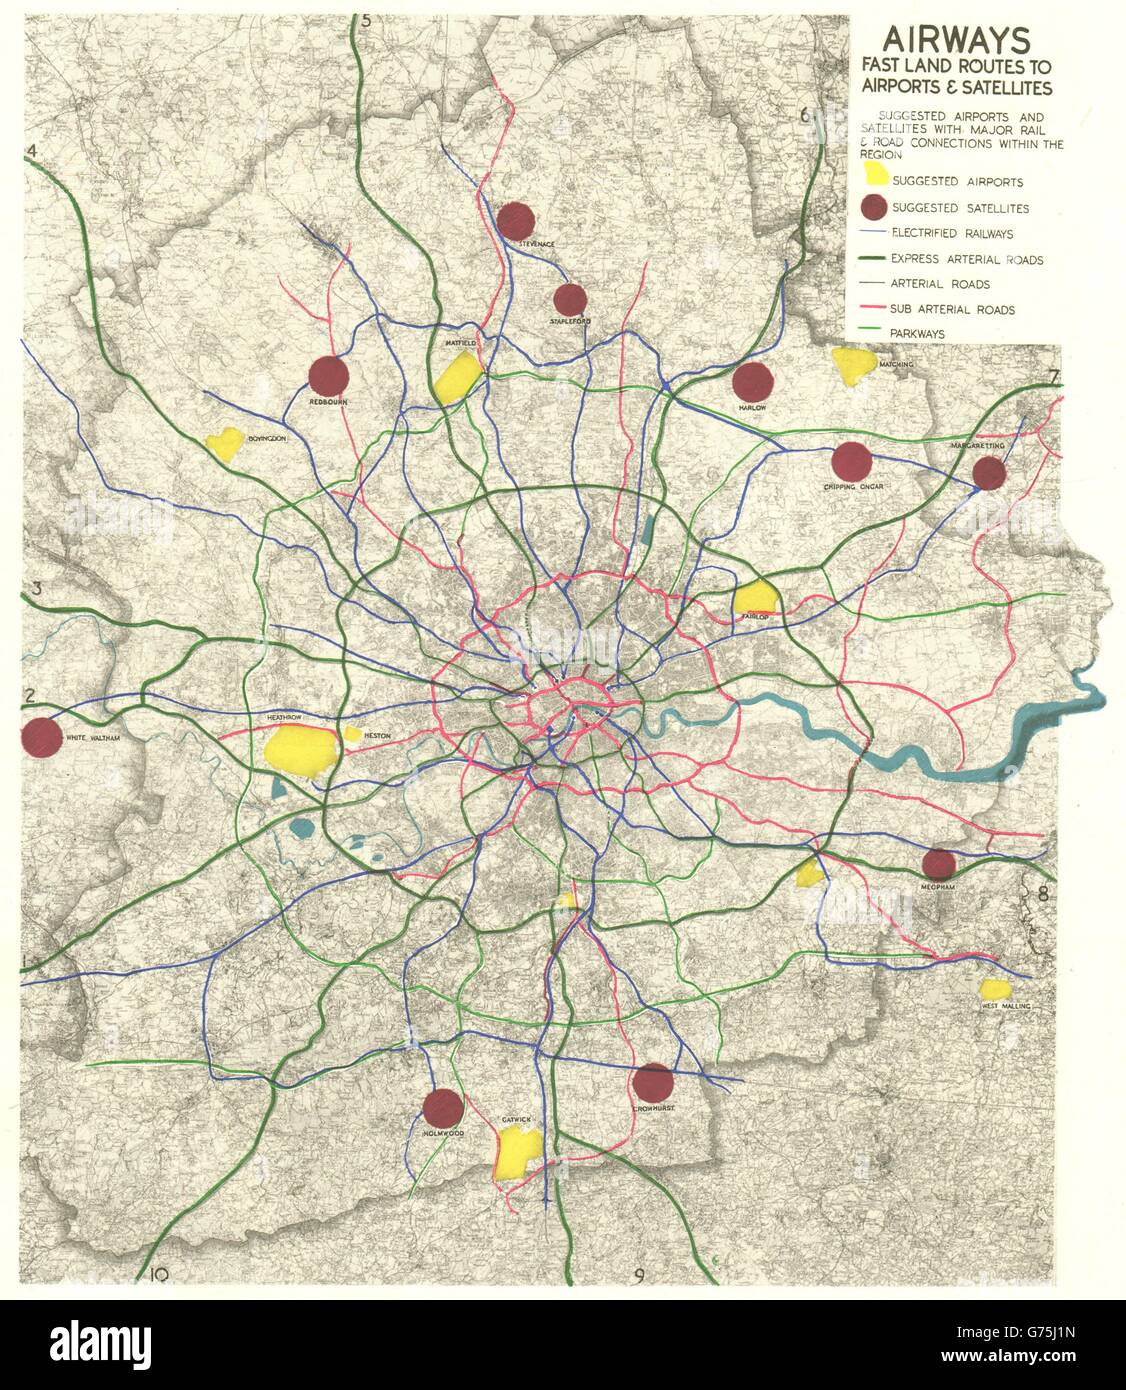 MEHR LONDON PLAN. Flughäfen & Straße/Schiene Verbindungen. ABERCROMBIE, 1944 Karte Stockfoto